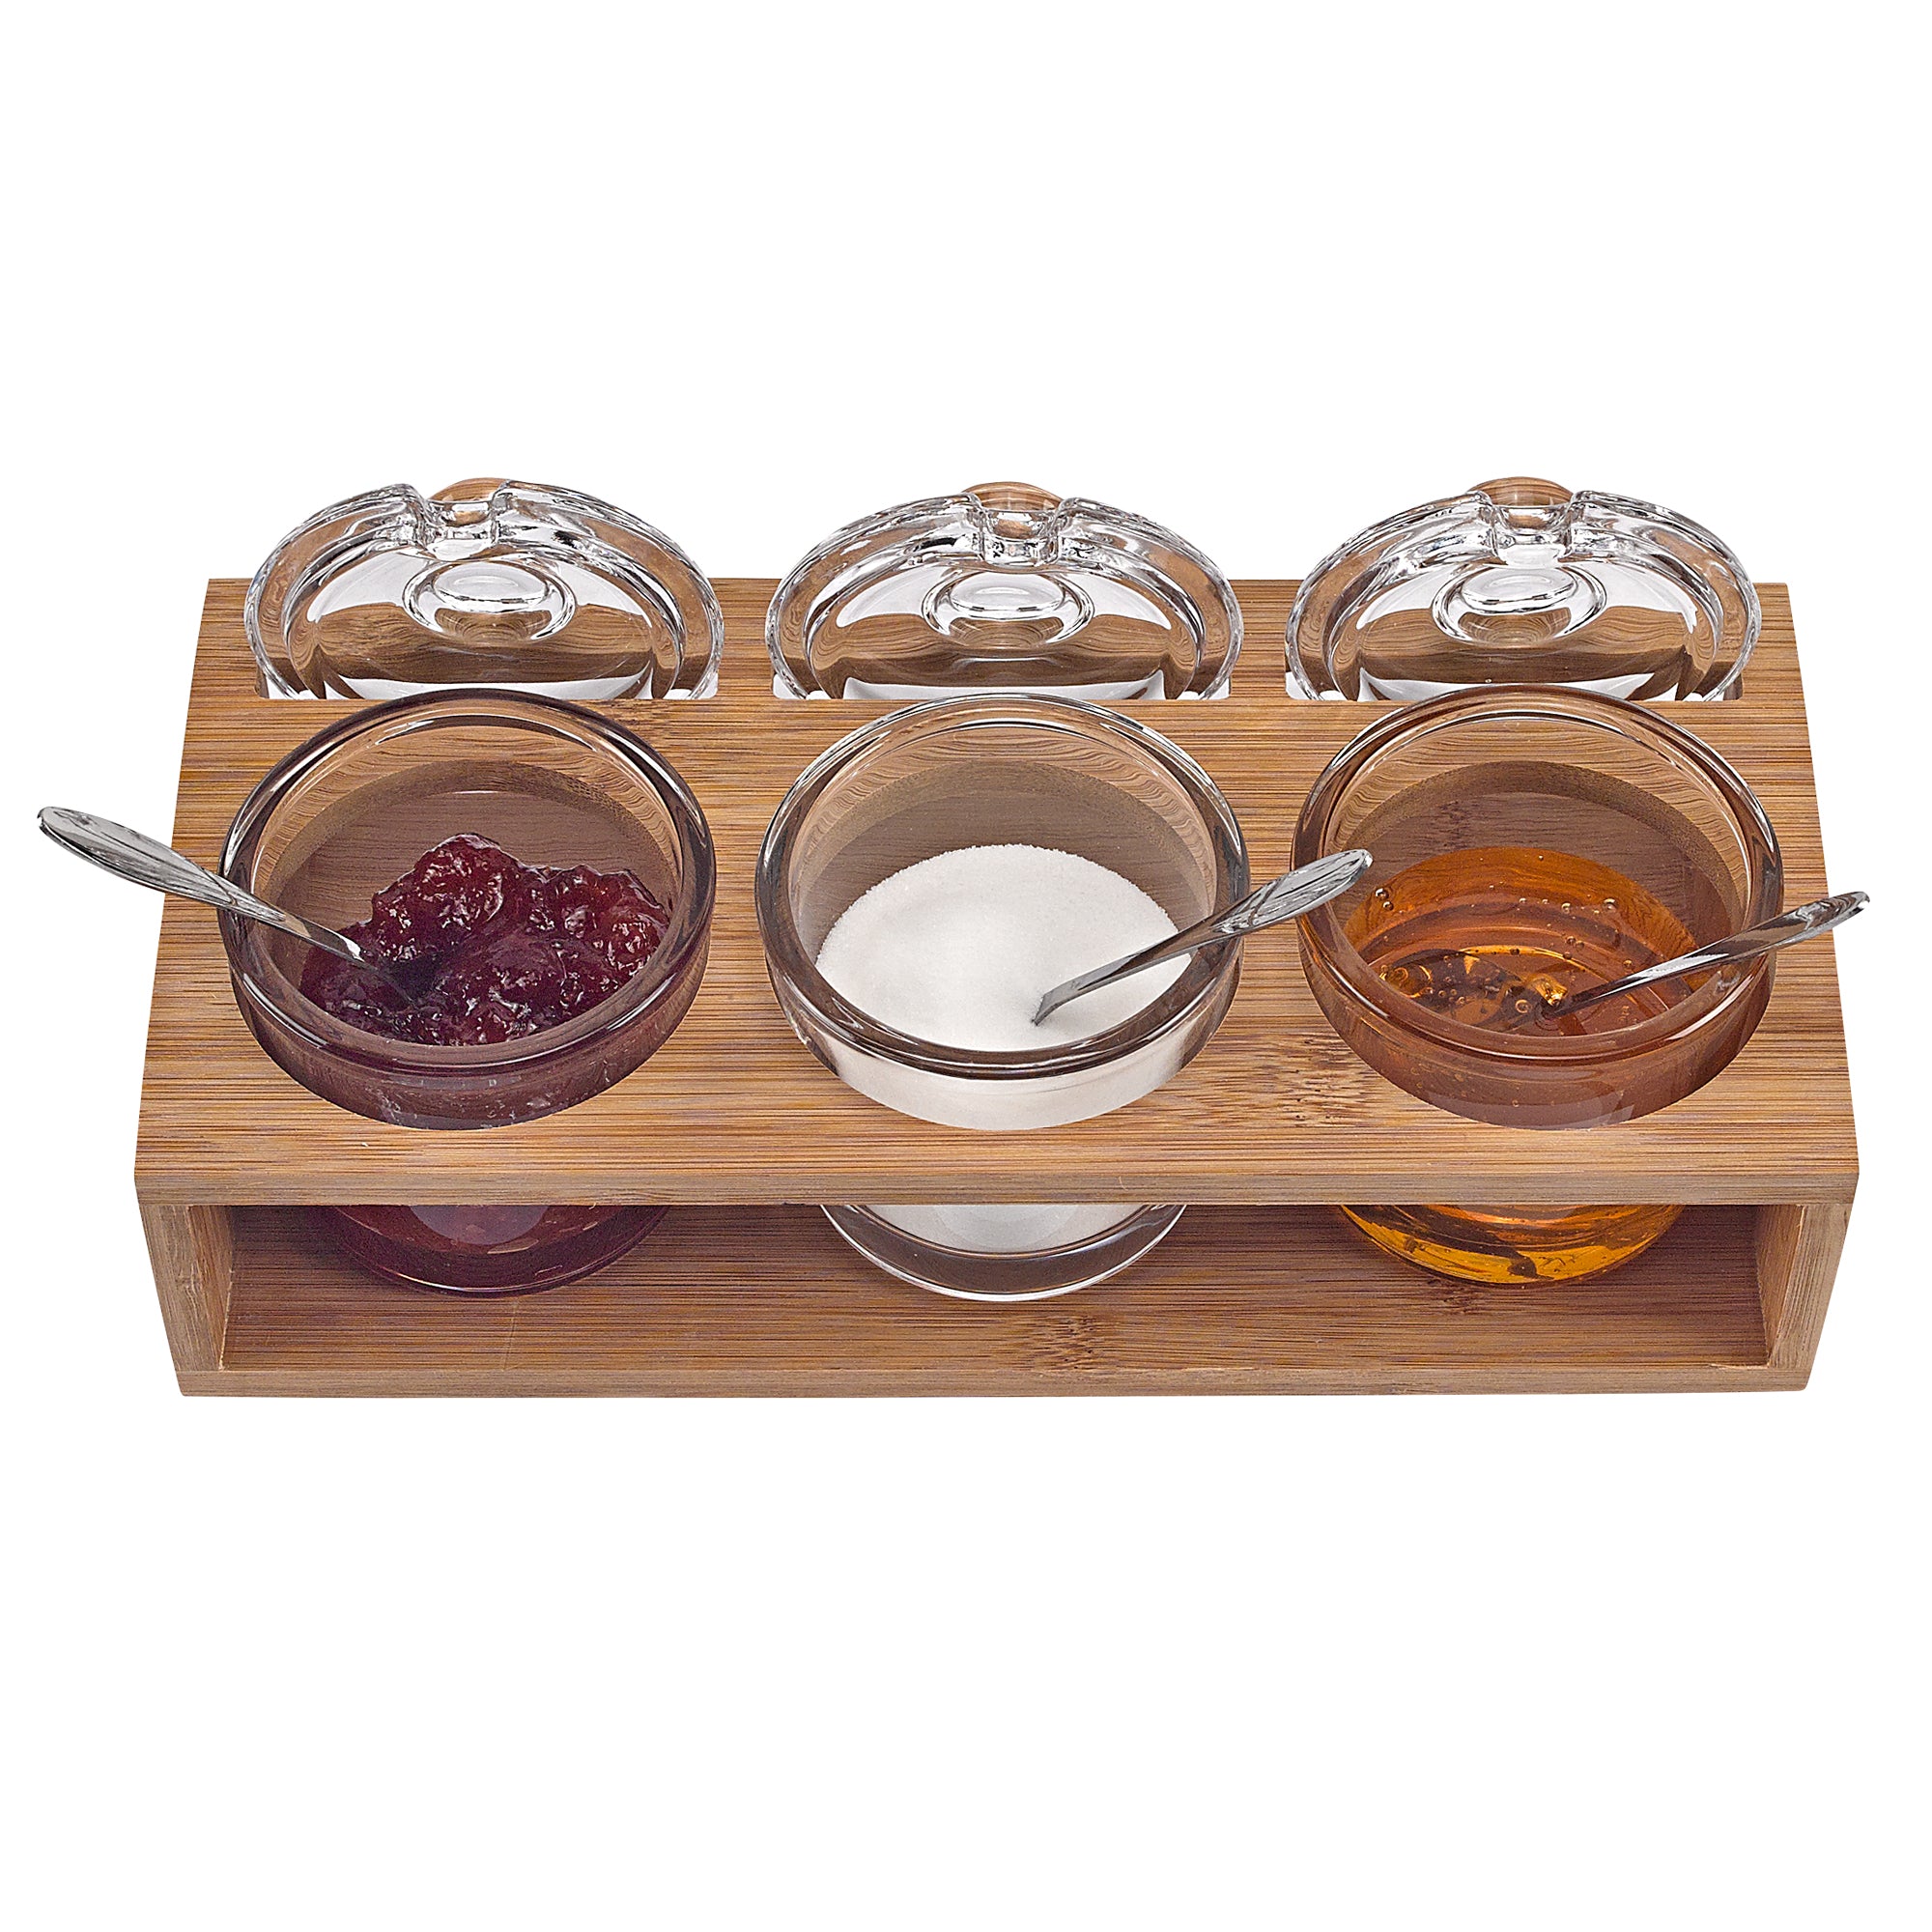 3 Pc Set Honey Jars With Tray